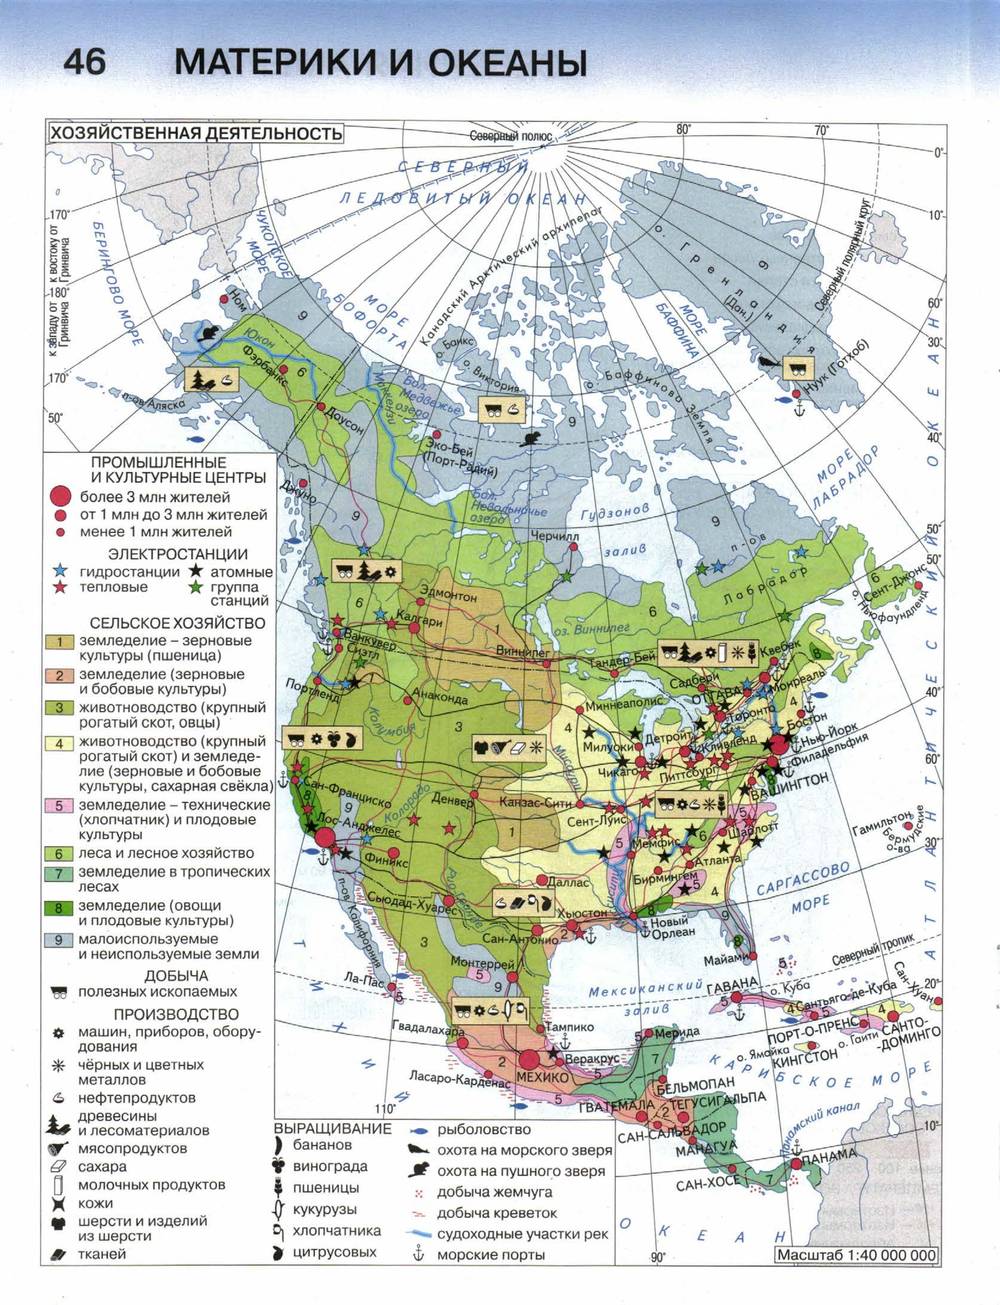 Полезные ископаемые северной америки на контурной карте. География атлас 7 Северная Америка. Комплексная карта Северной Америки 7 класс. Северная Америка хозяйство карта. Сельское хозяйство Северной Америки атлас.